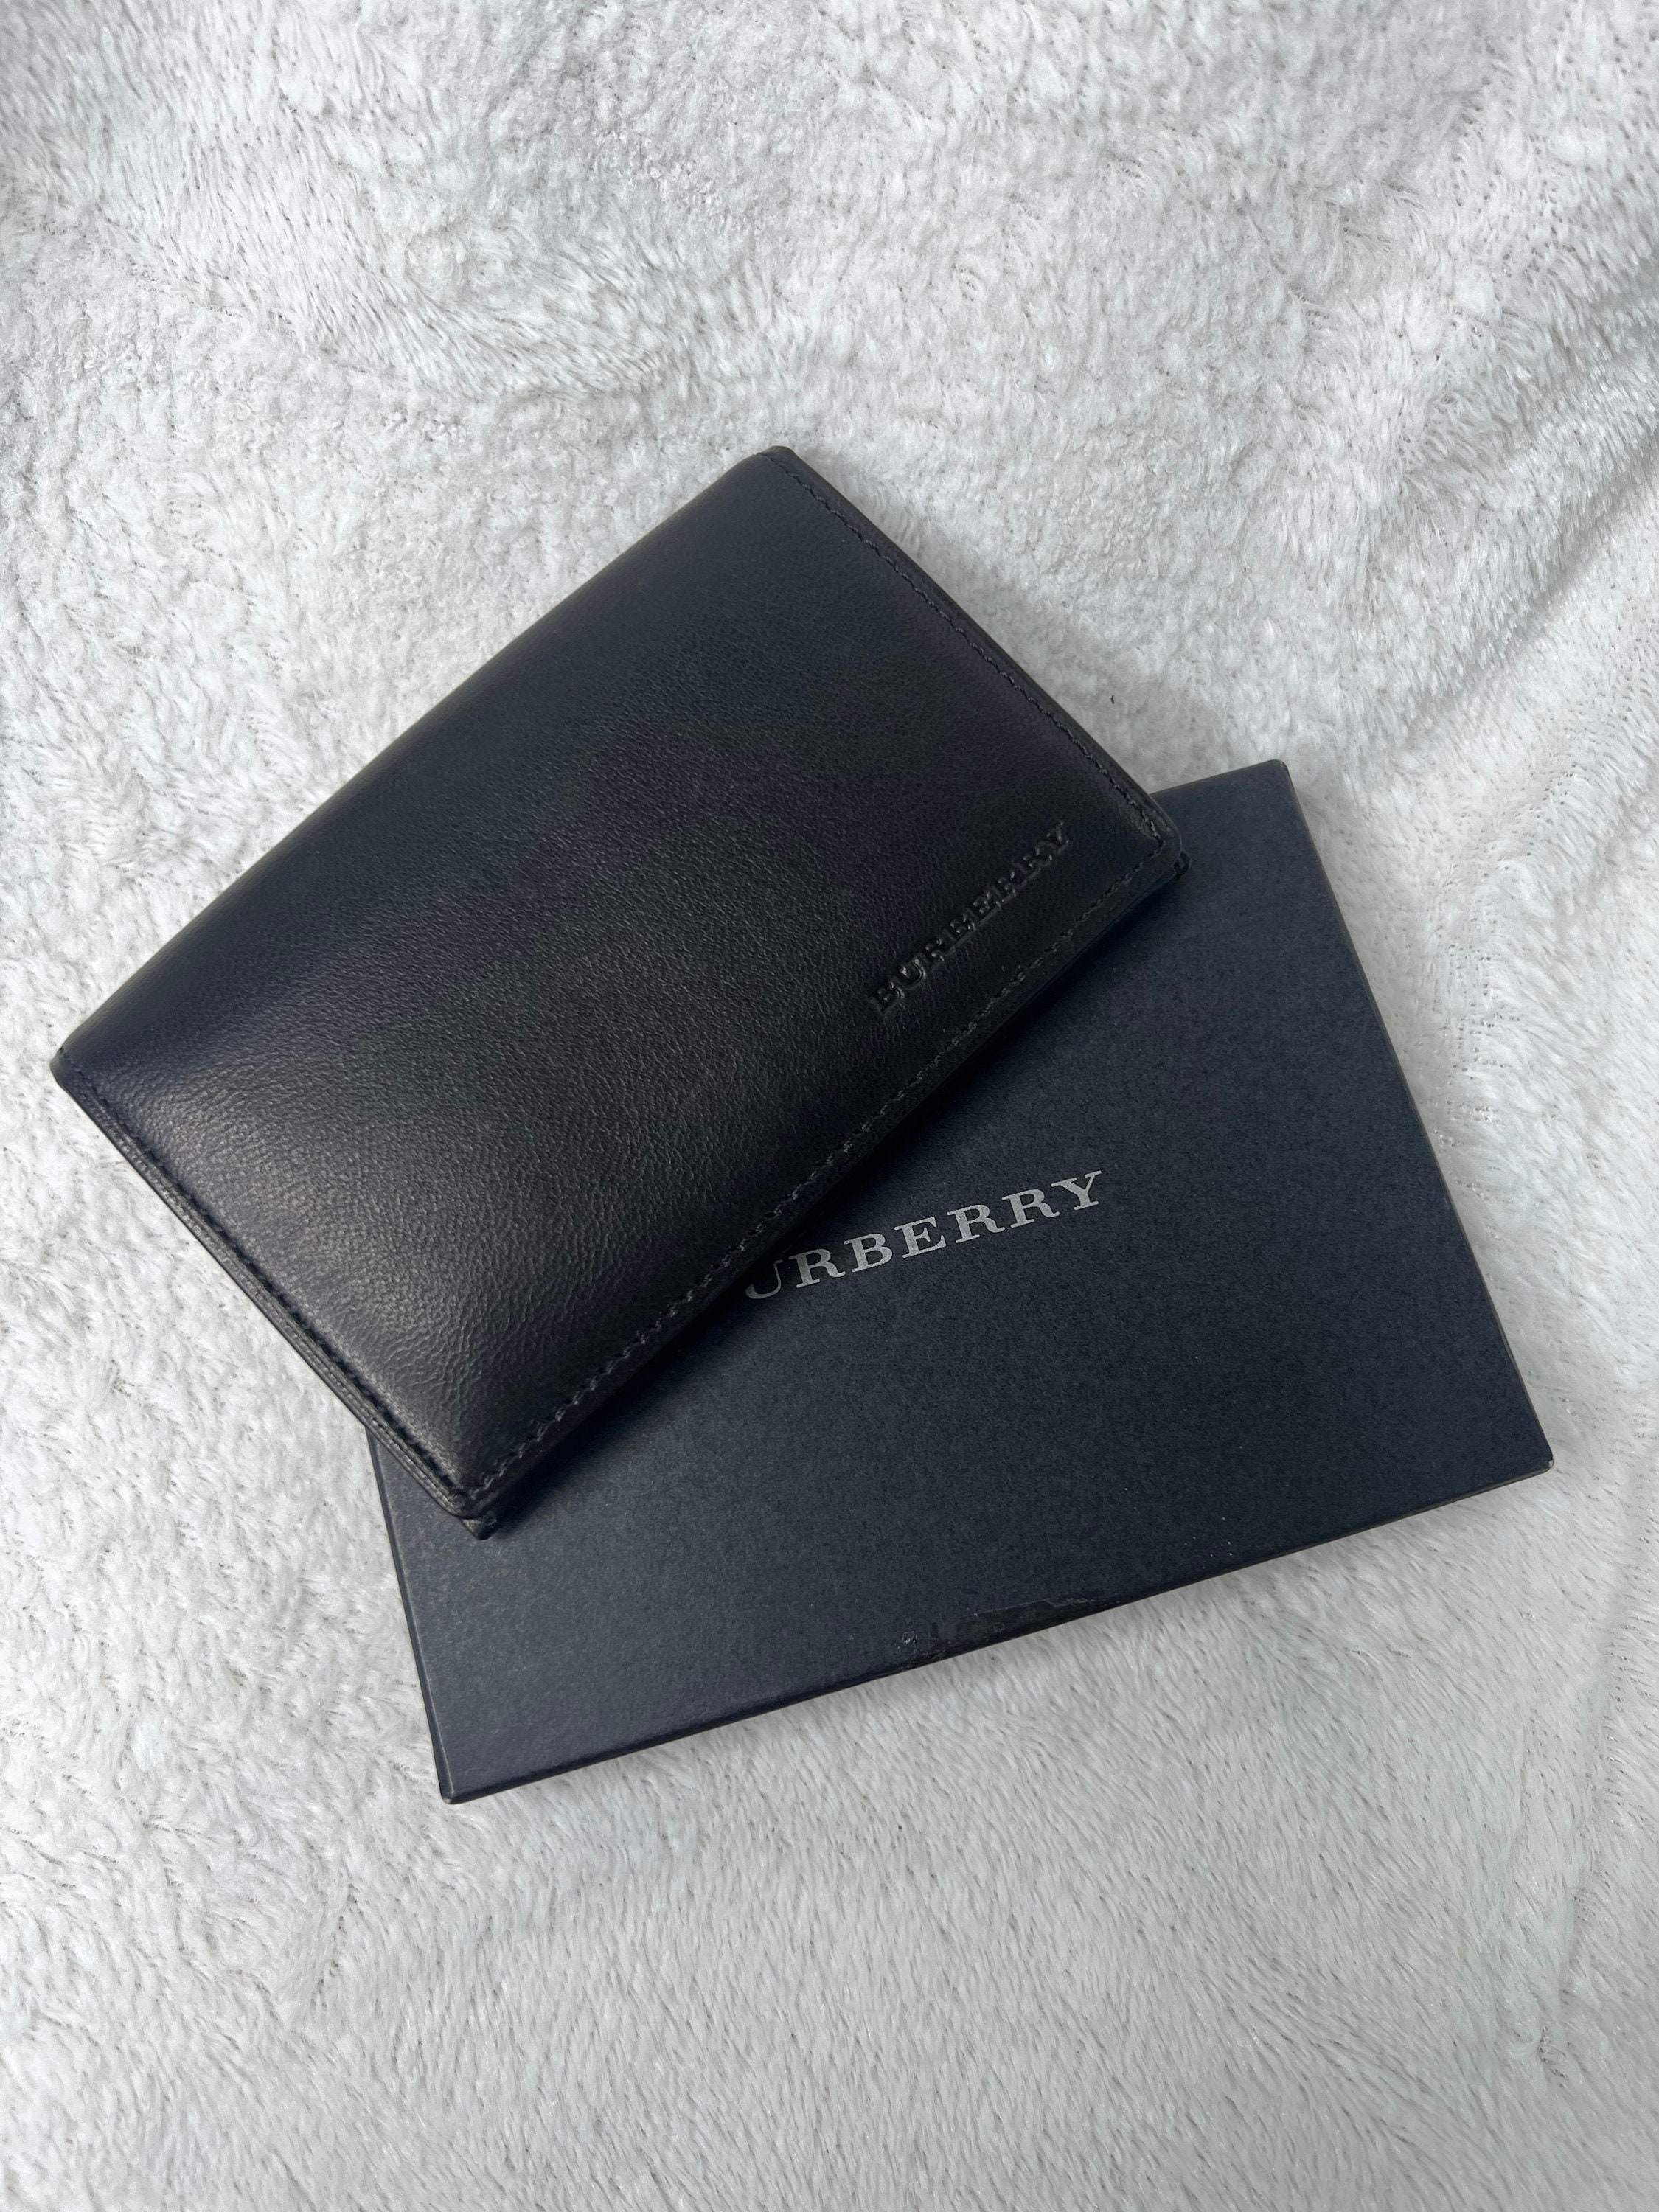 burberry wallet men